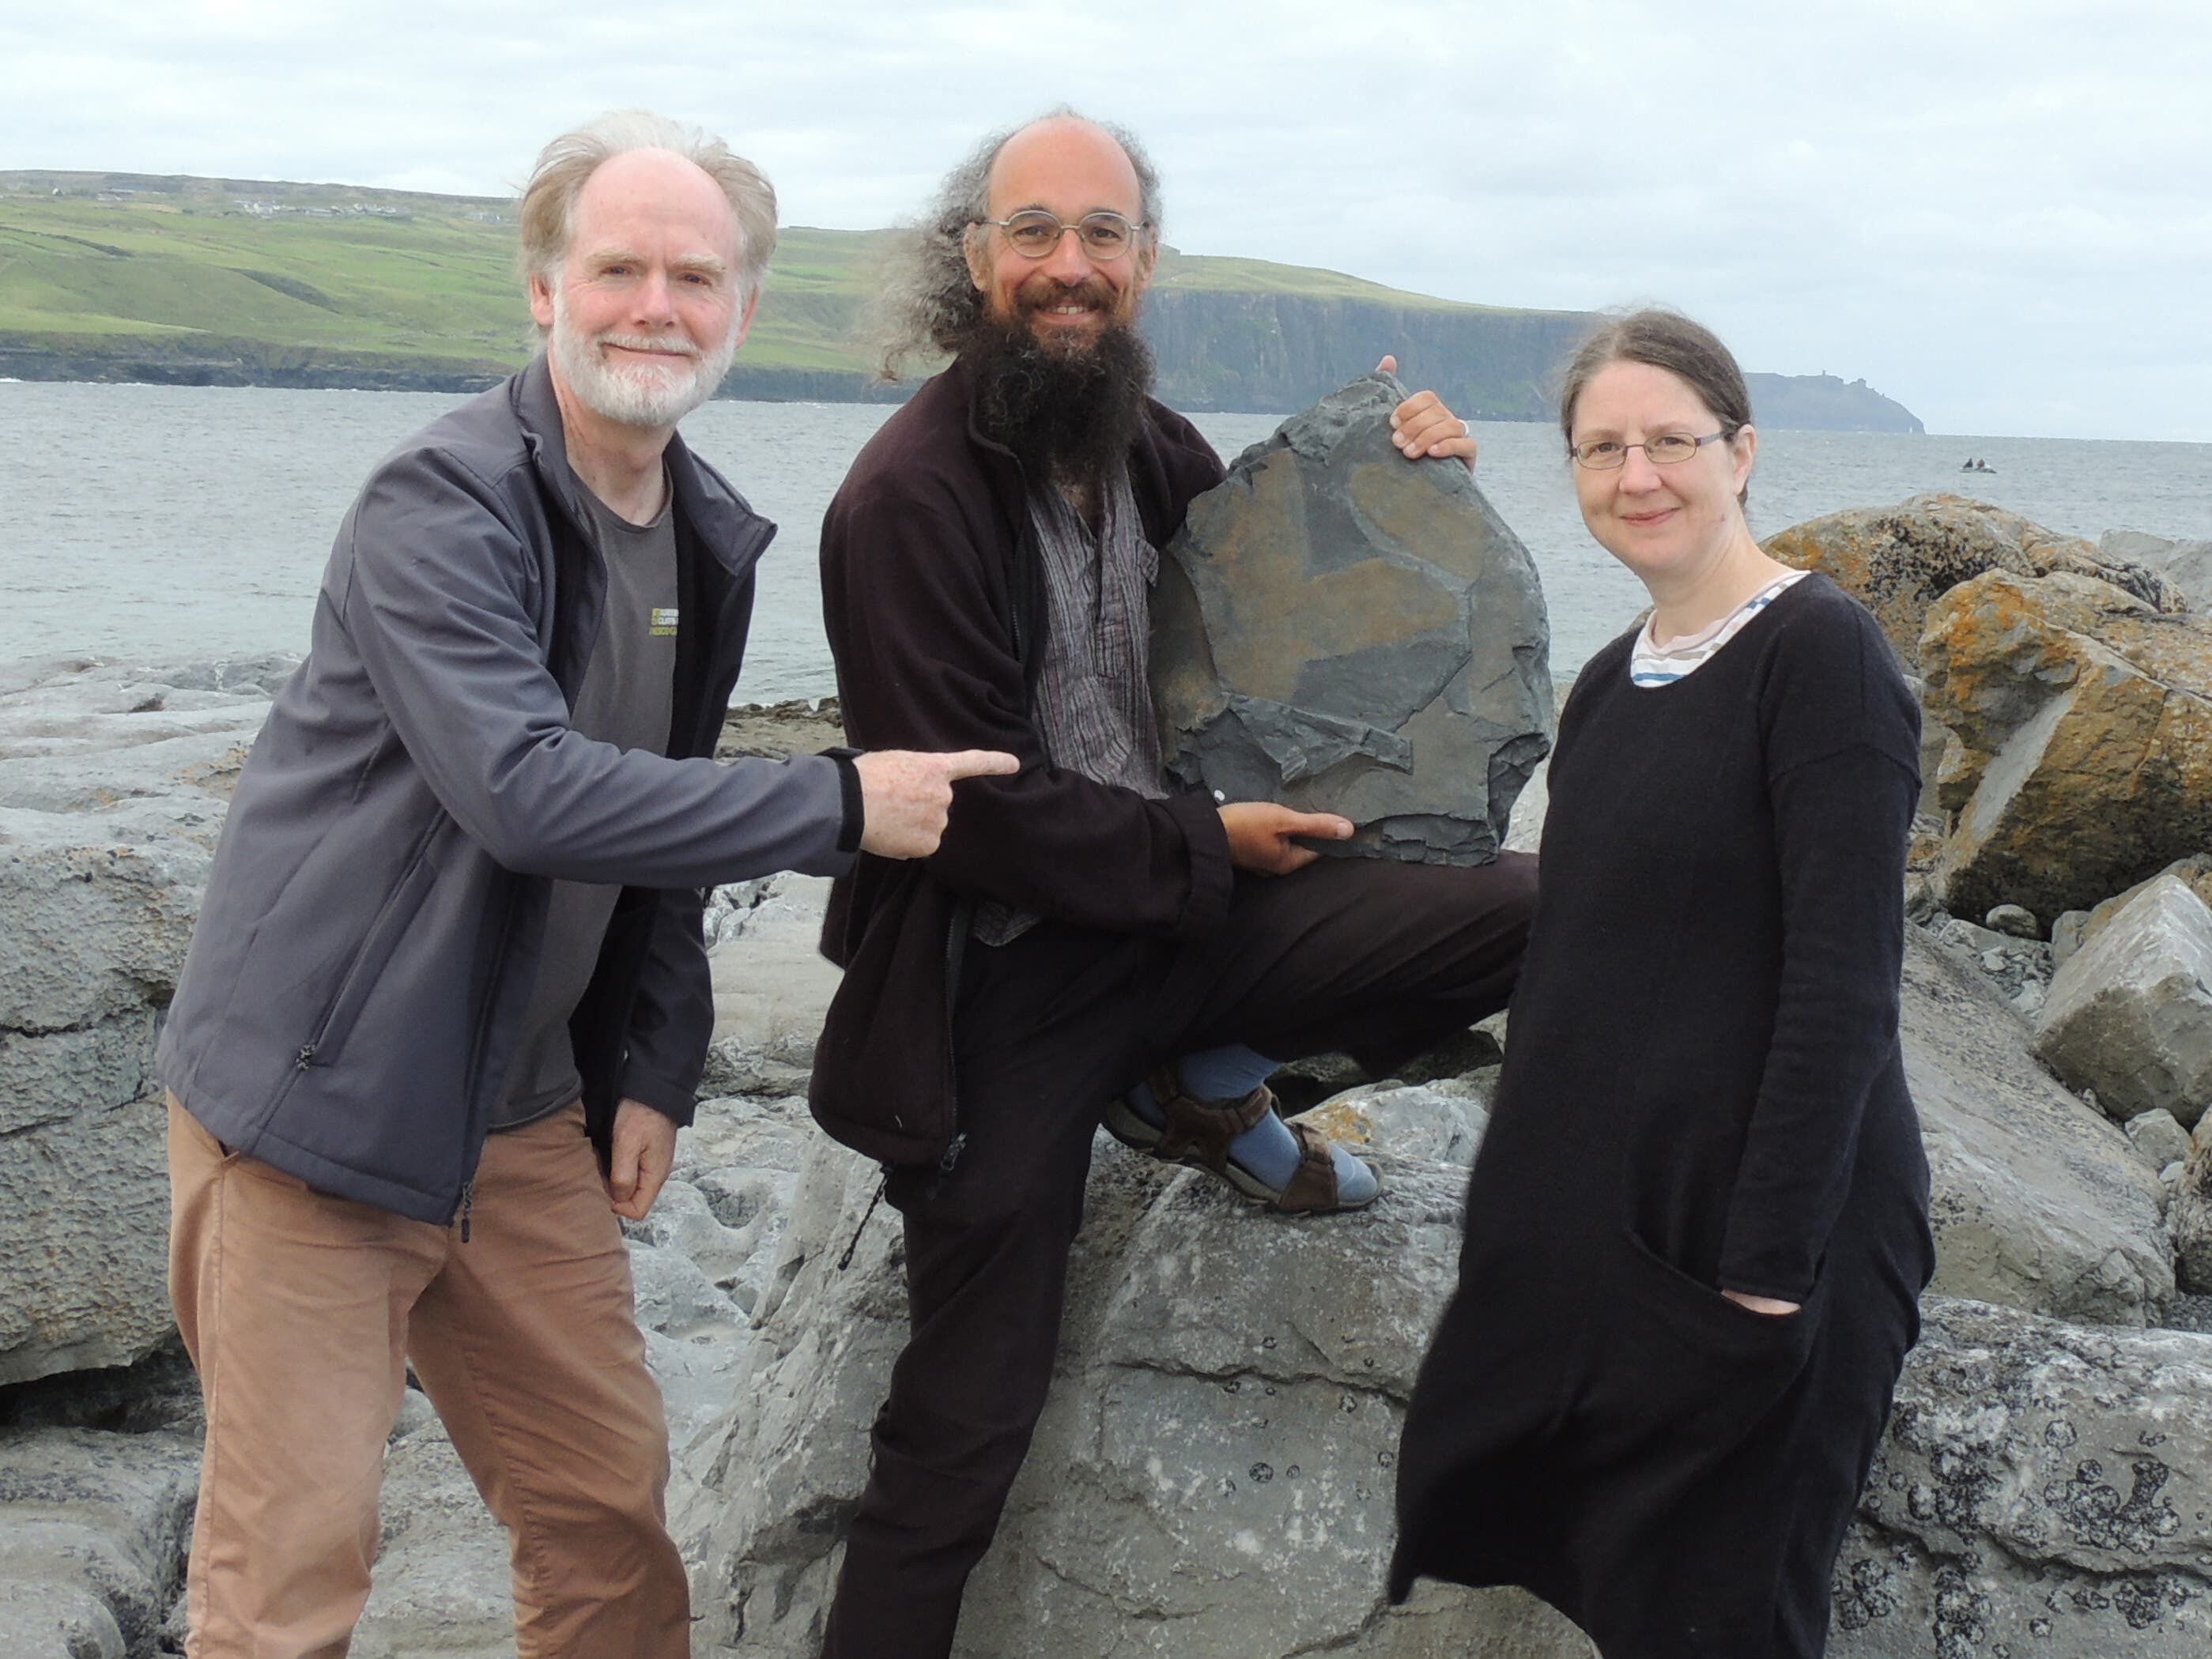 ‘Exceptional’ 315-million-year-old fossil sponge found in Irish cliffs